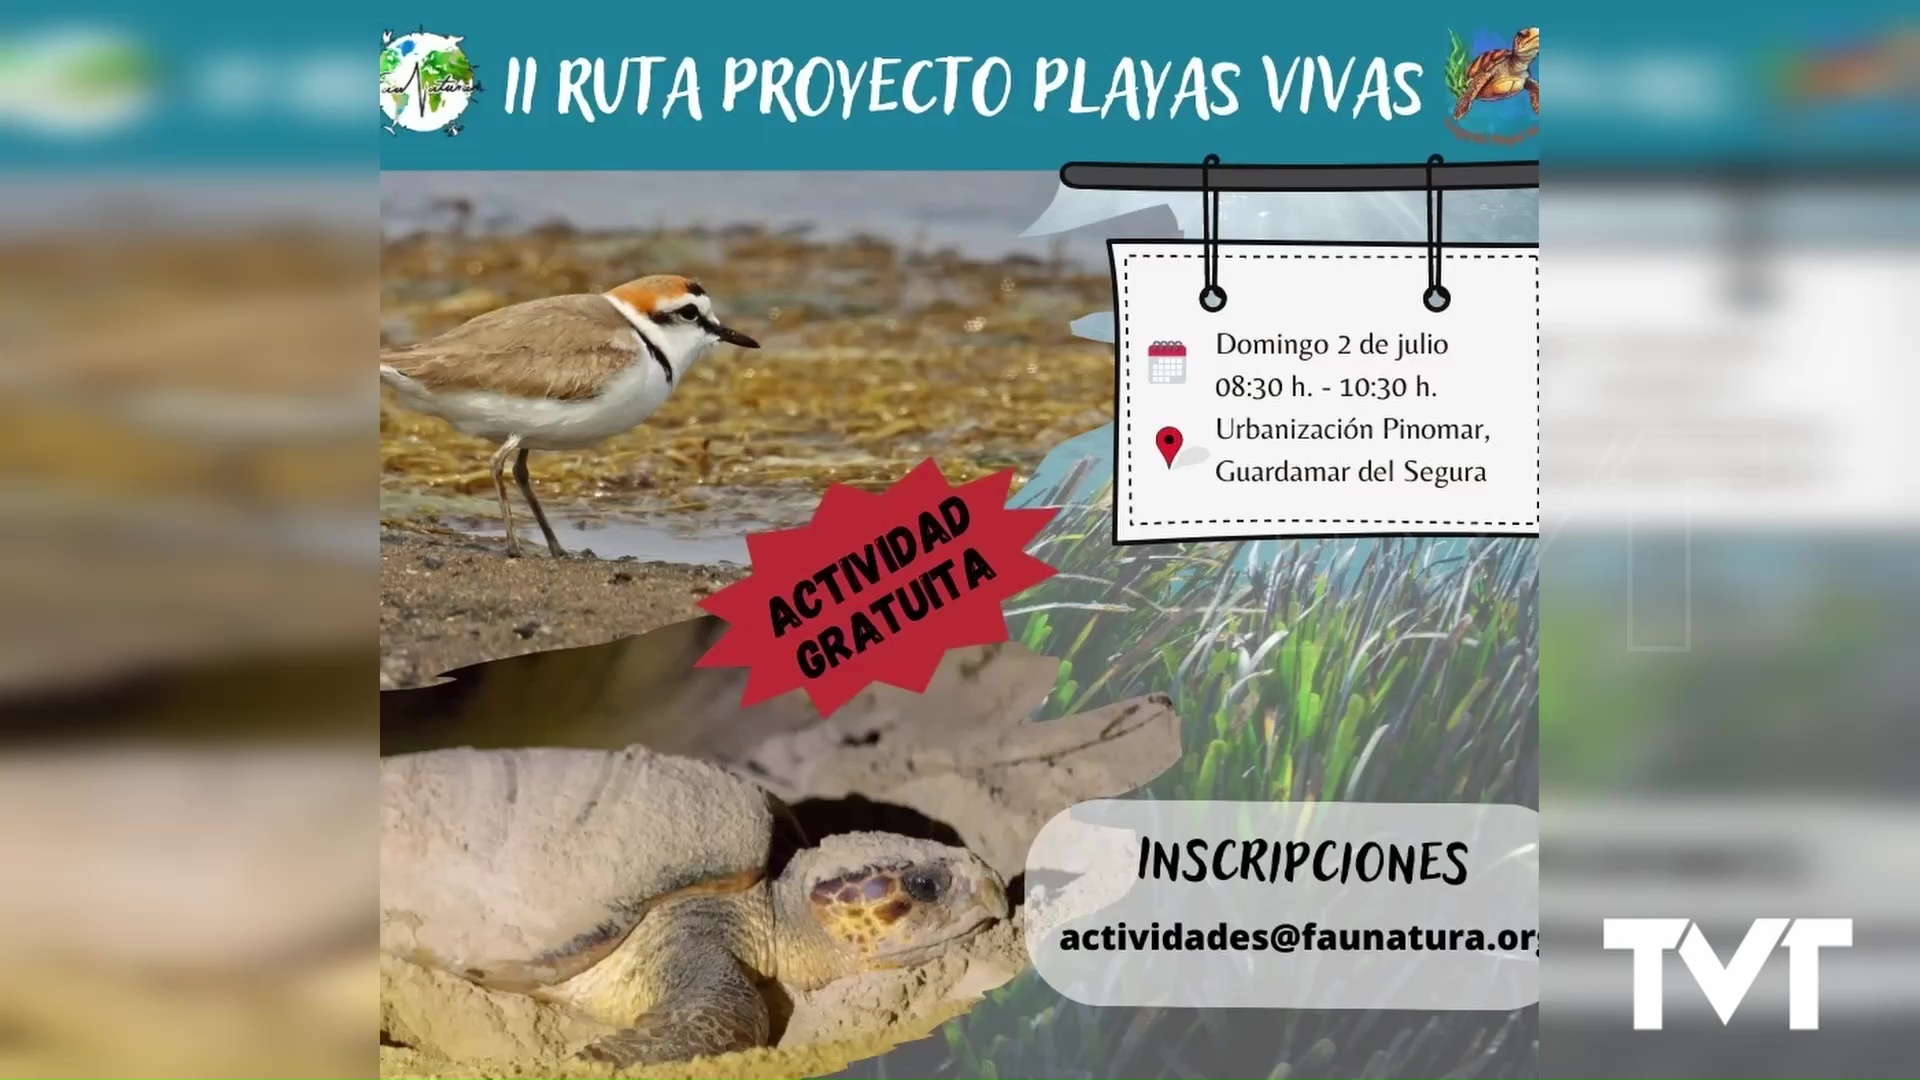 Imagen de Faunatura pone en marcha el proyecto Playas Vivas